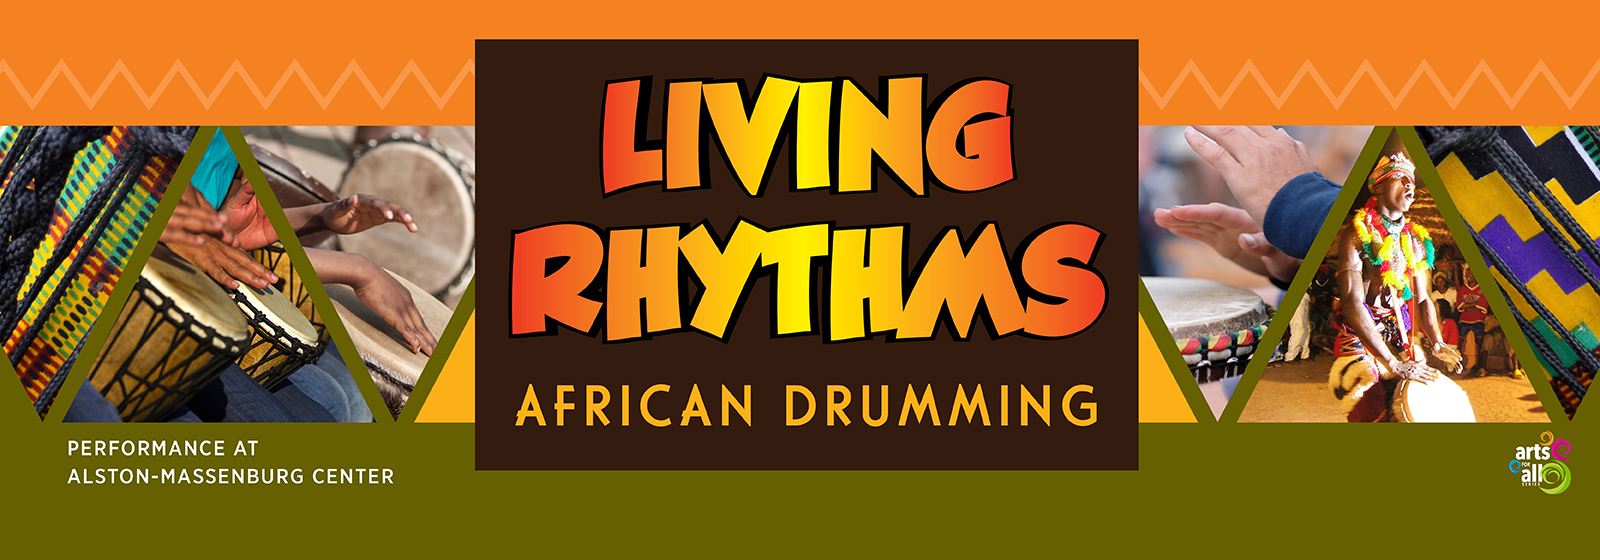 Living Rhythms African Drumming